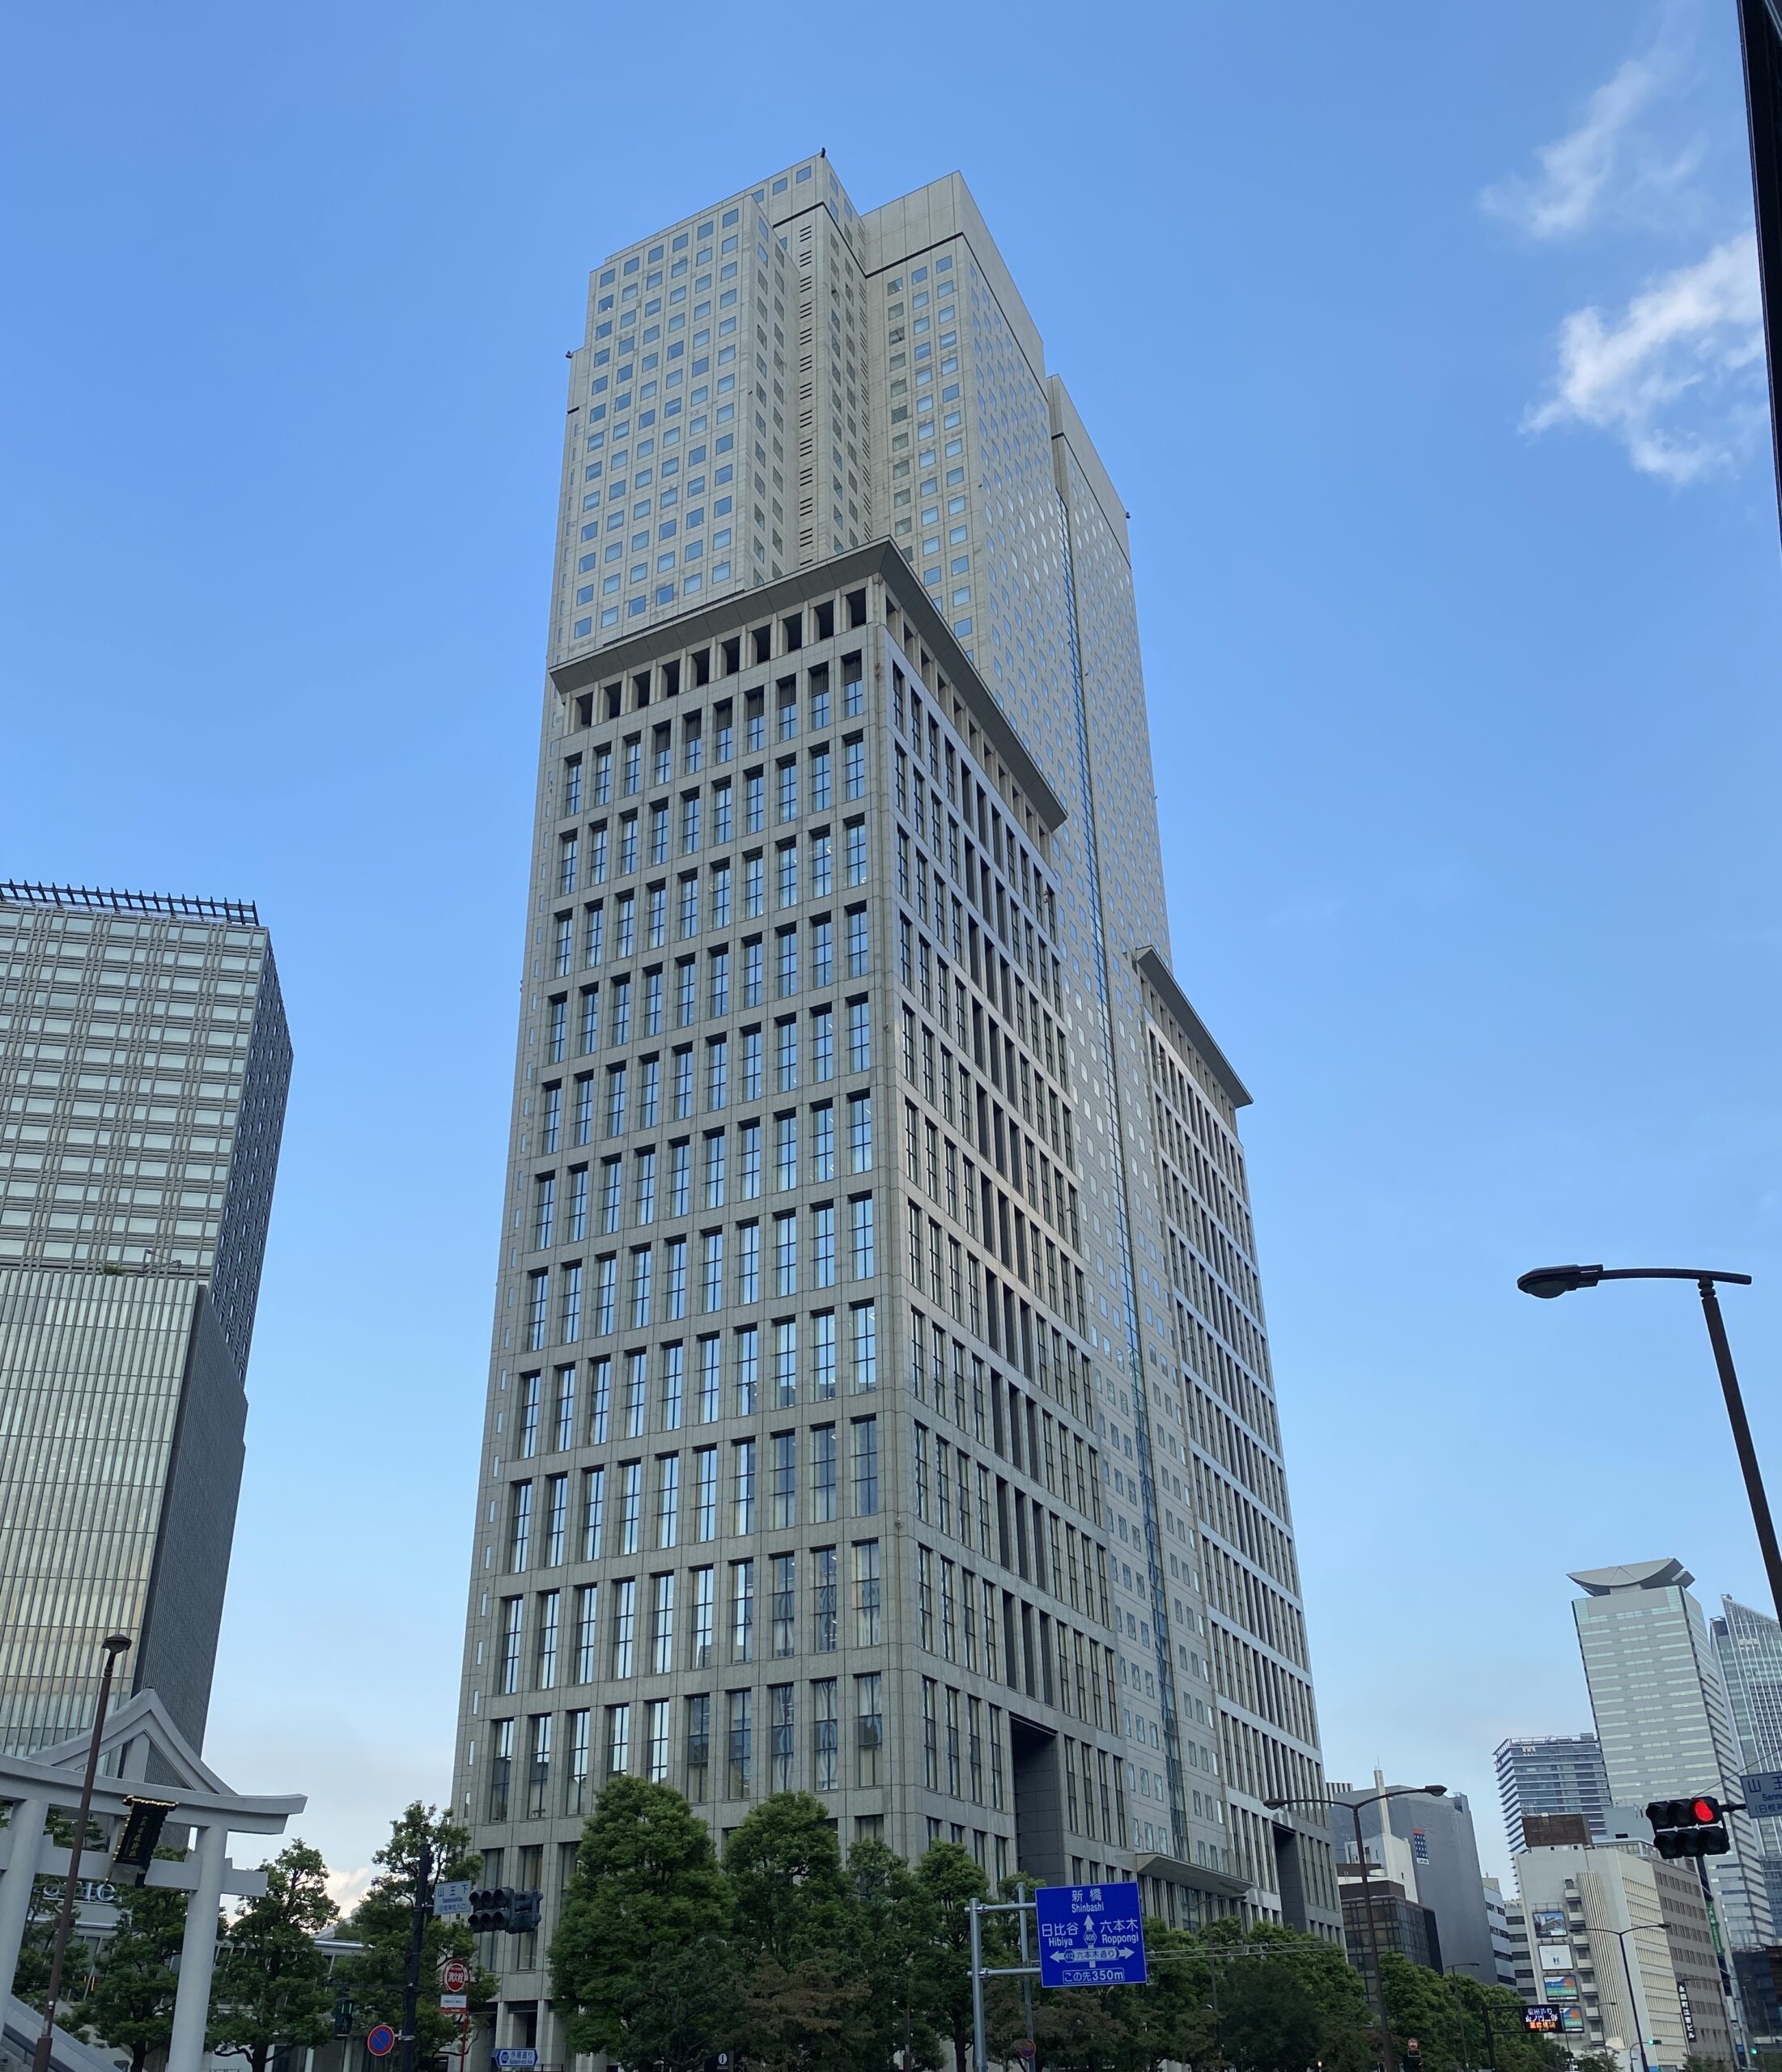 NTTドコモの本社ビルの外観写真